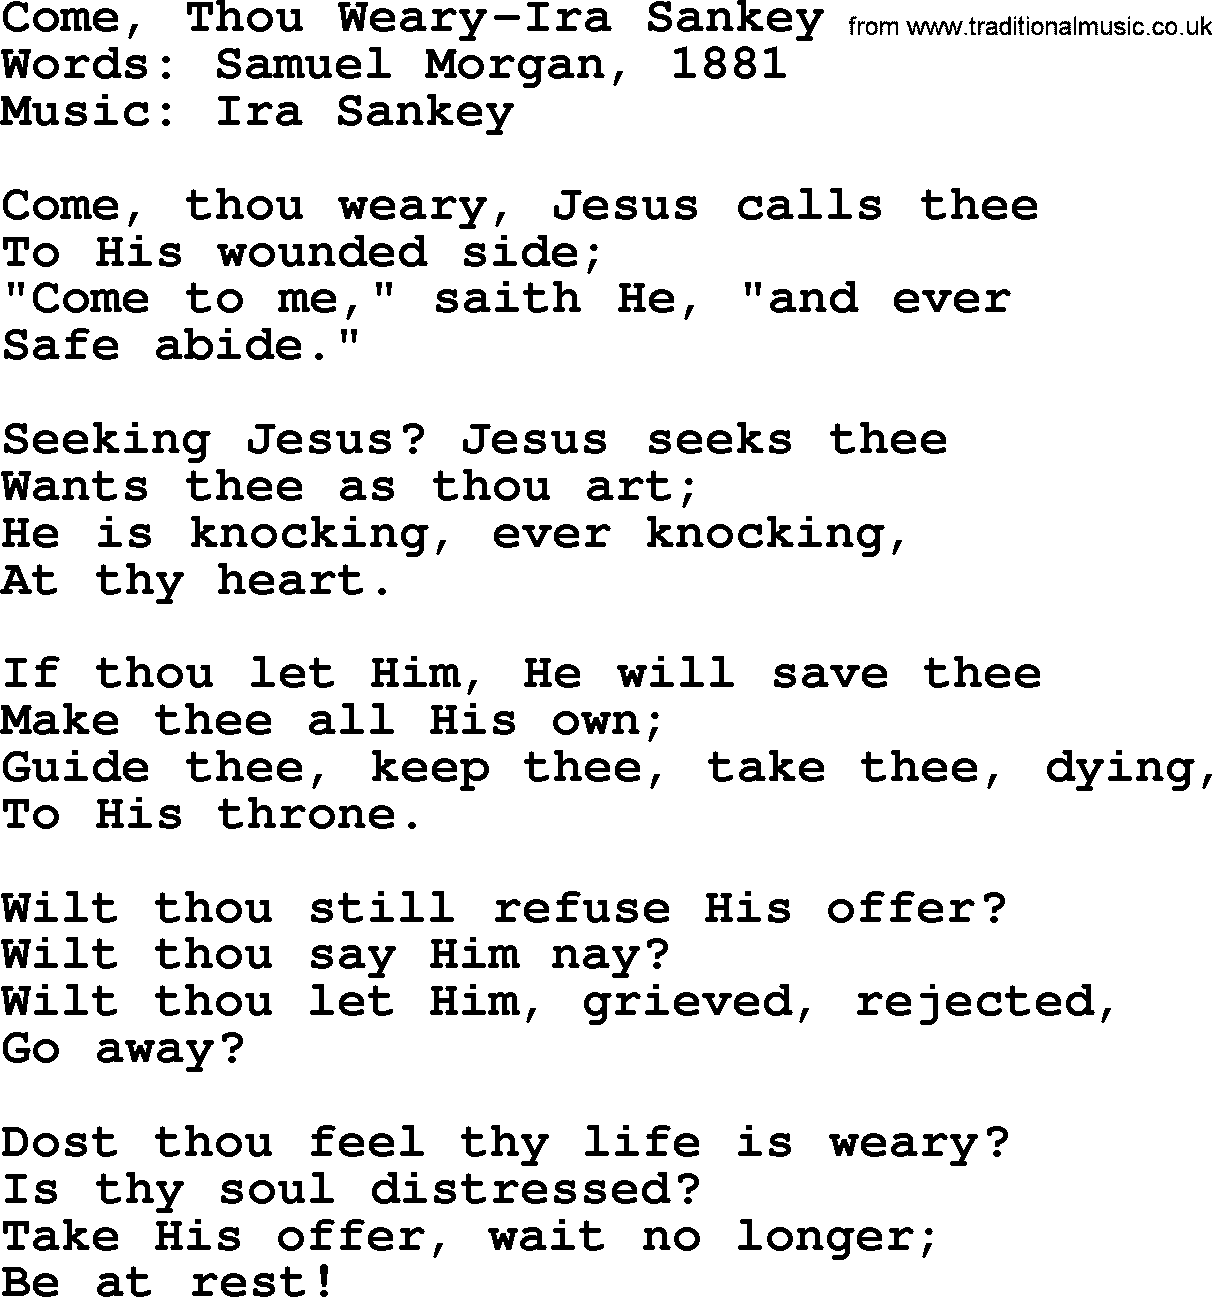 Ira Sankey hymn: Come, Thou Weary-Ira Sankey, lyrics